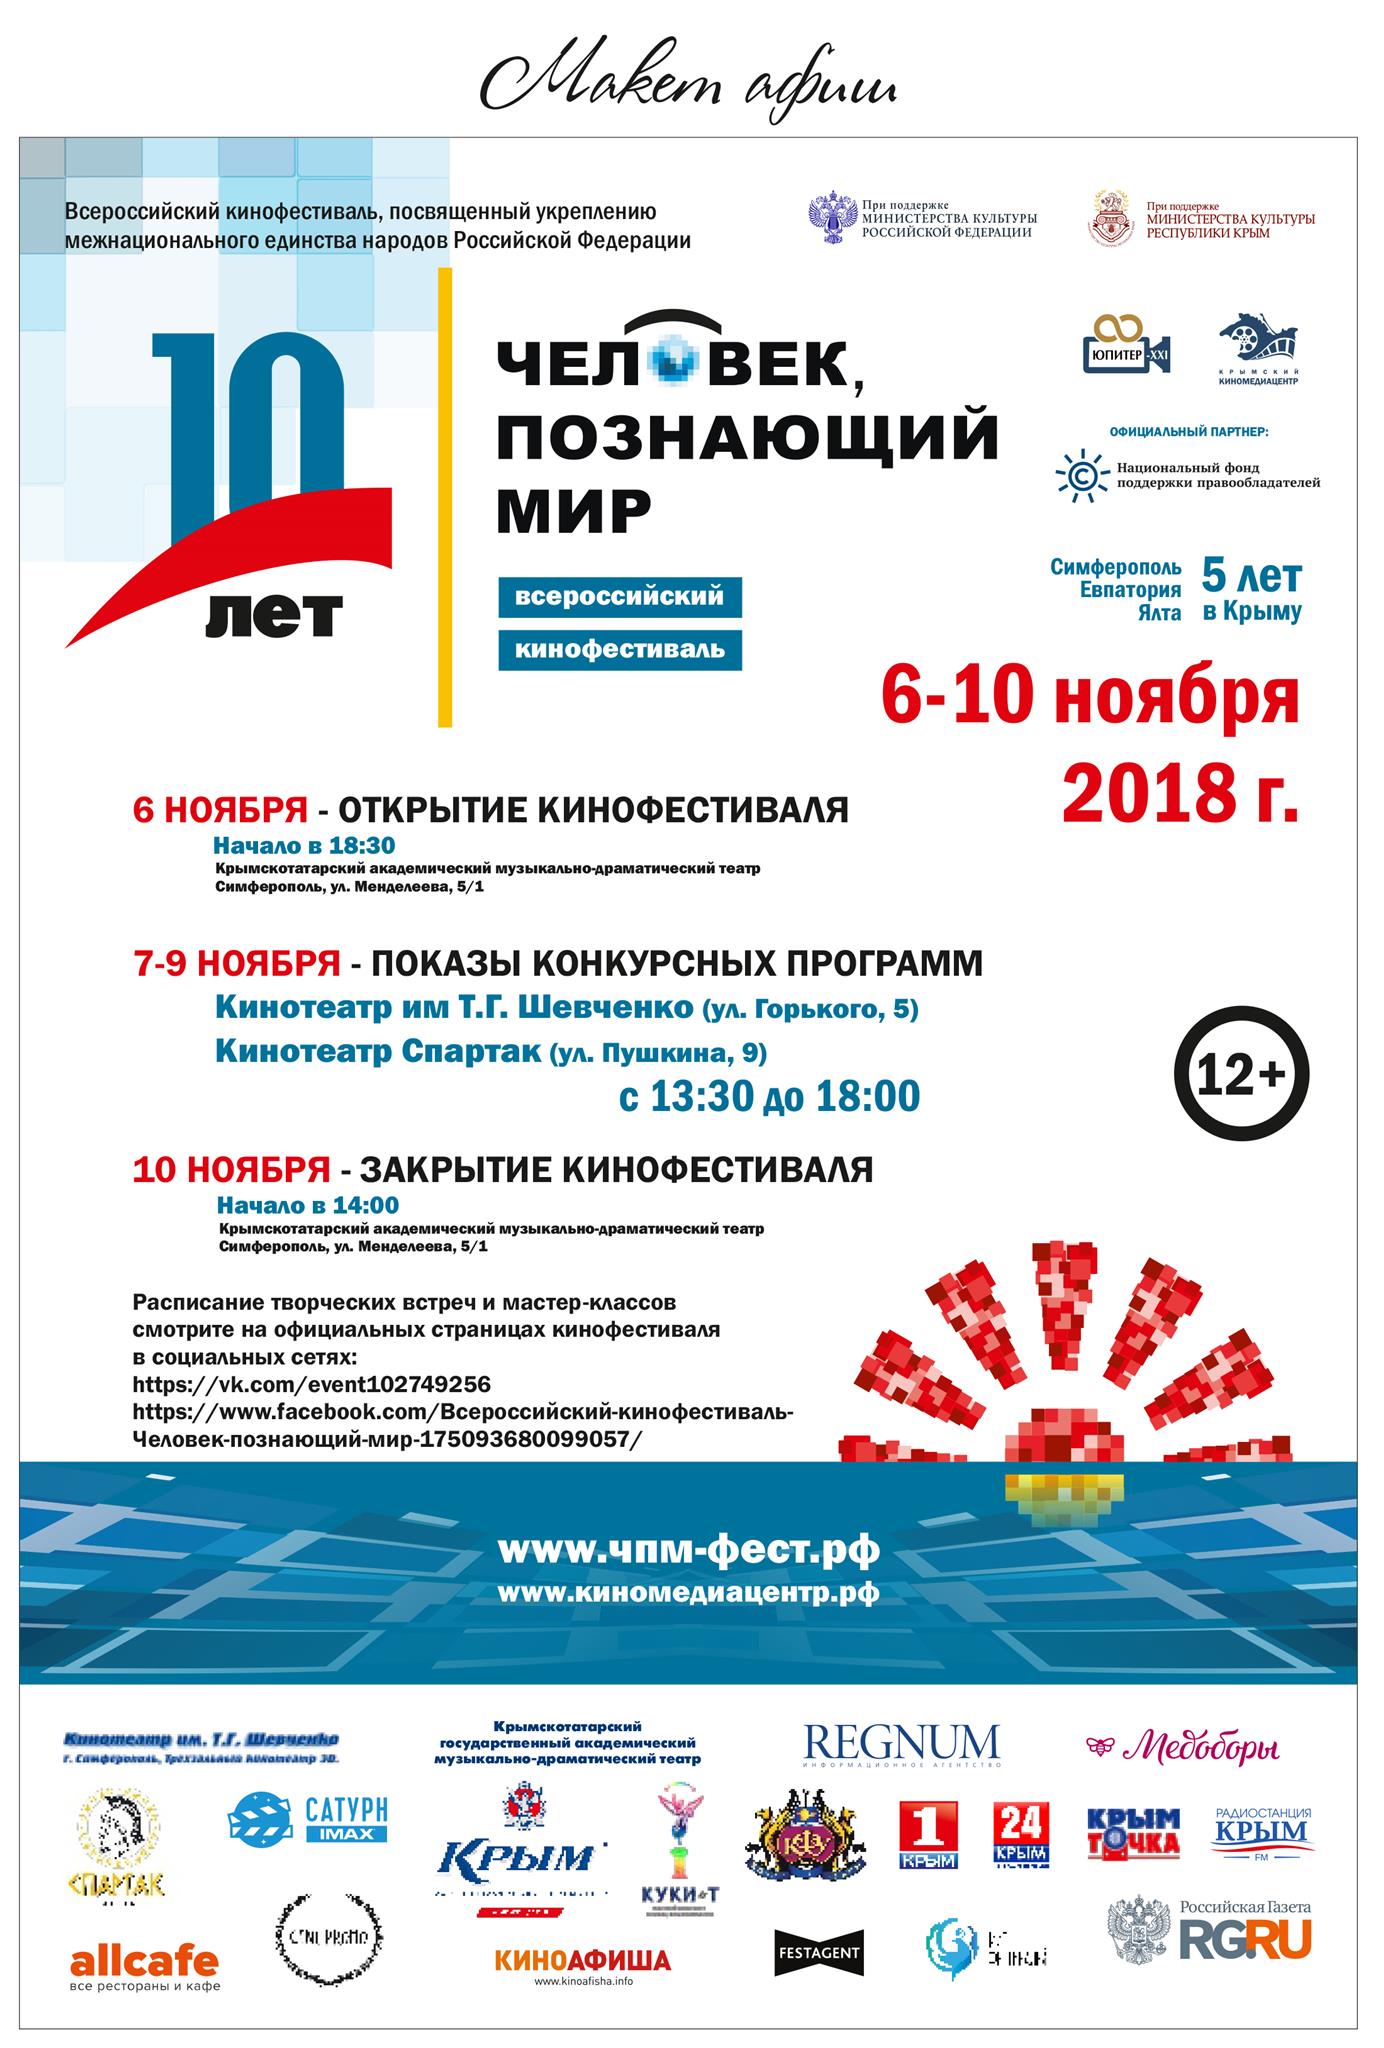 В Крыму при поддержке НФПП пройдет Х фестиваль российского кино «Человек, познающий мир»